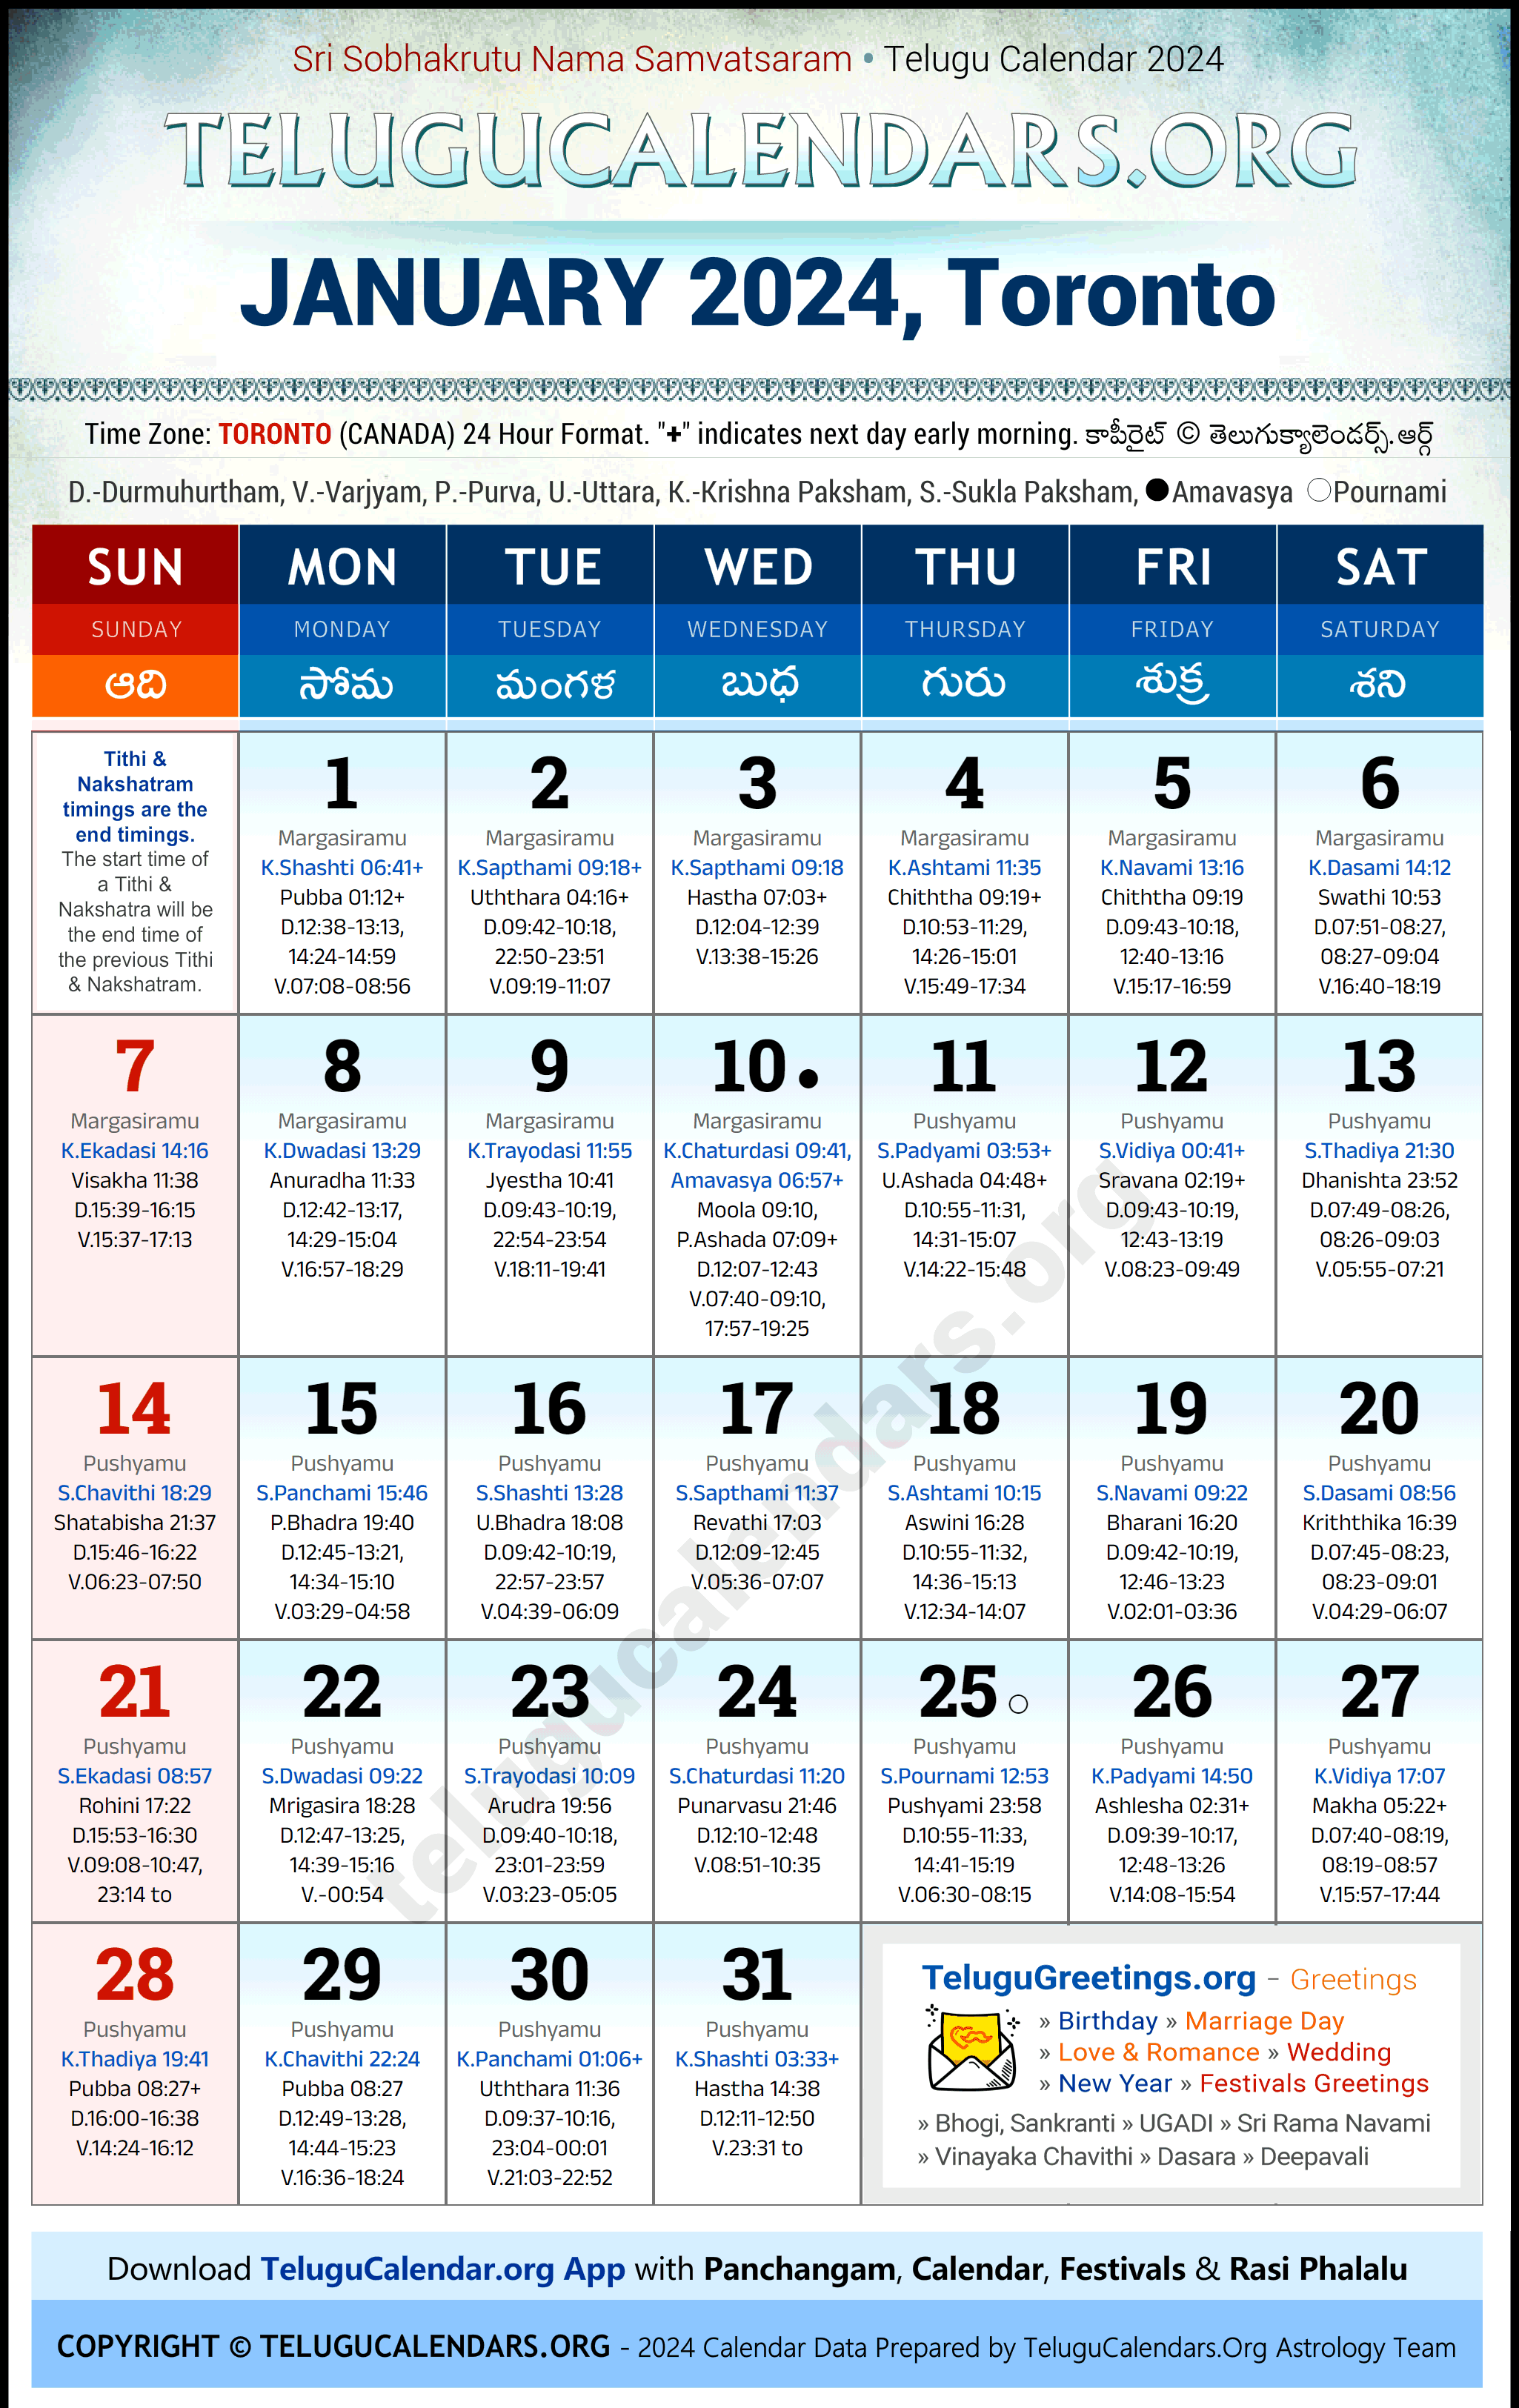 Telugu Calendar 2024 January Festivals for Toronto